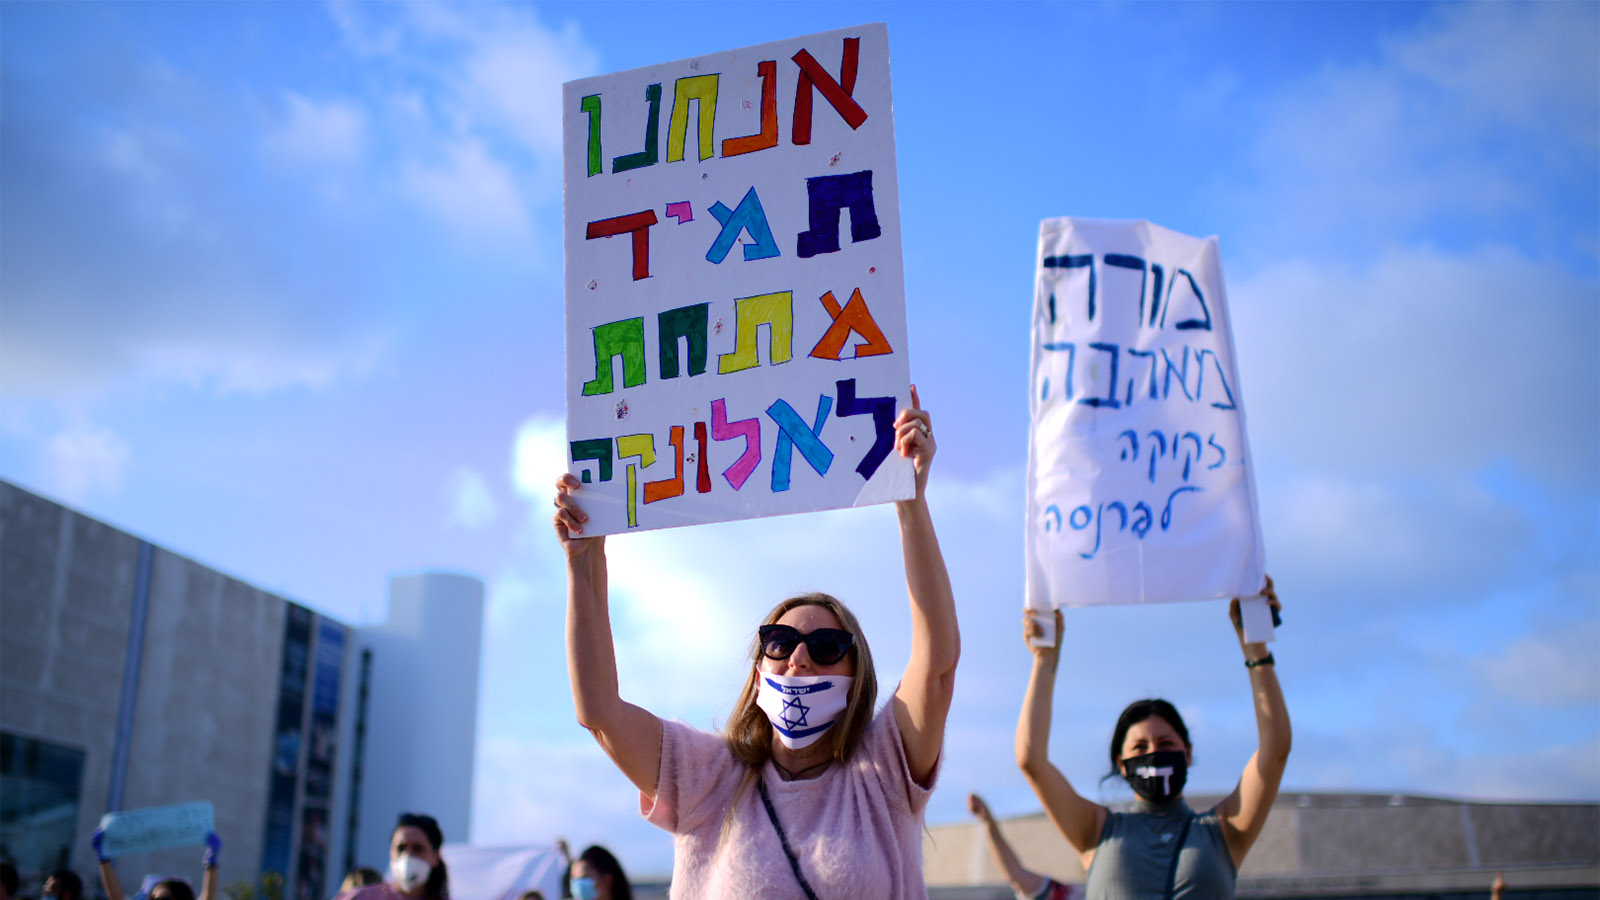 הפגנת מורים בתל אביב, 30 באפריל 2020 (צילום: תומר נויברג / פלאש 90).